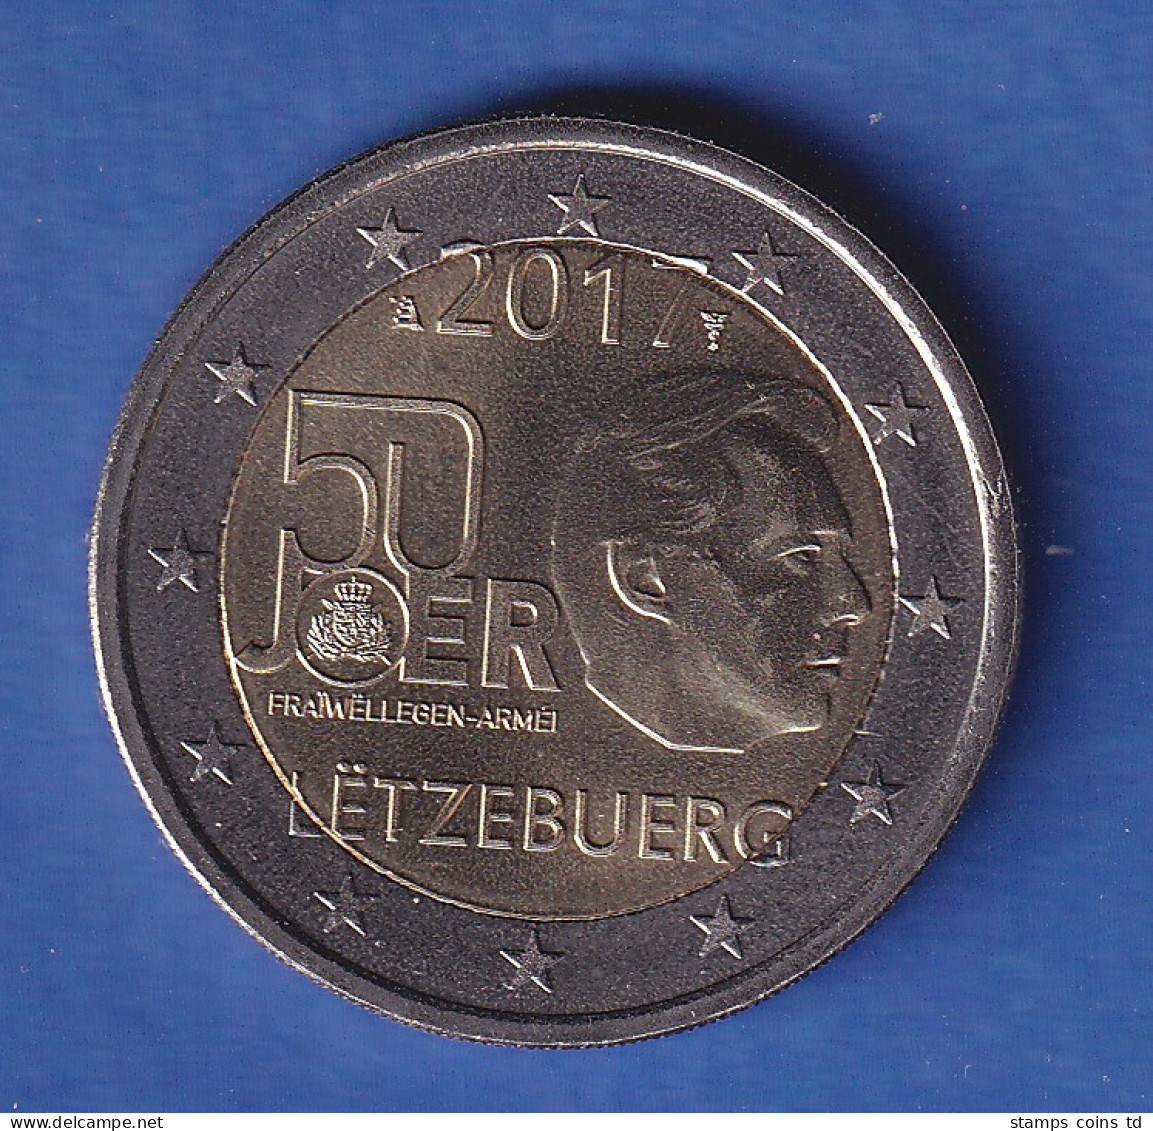 Luxemburg 2017 2-Euro-Sondermünze Wehrdienst Bankfr. Unzirk. - Luxembourg